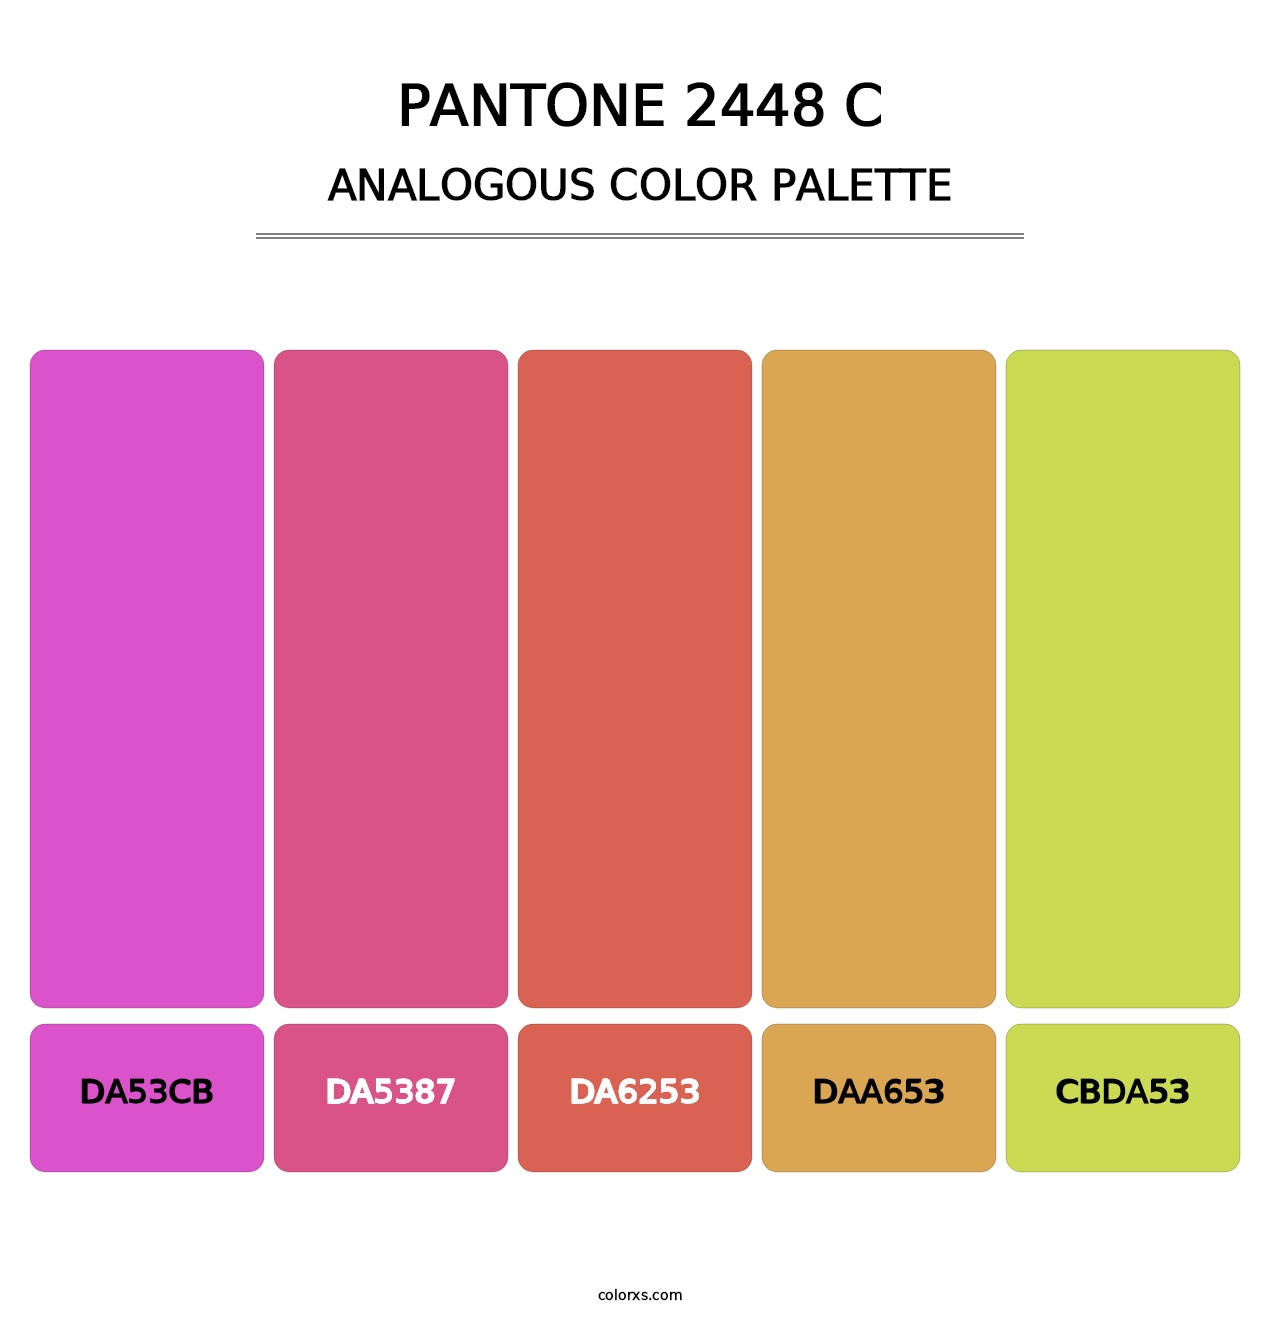 PANTONE 2448 C - Analogous Color Palette